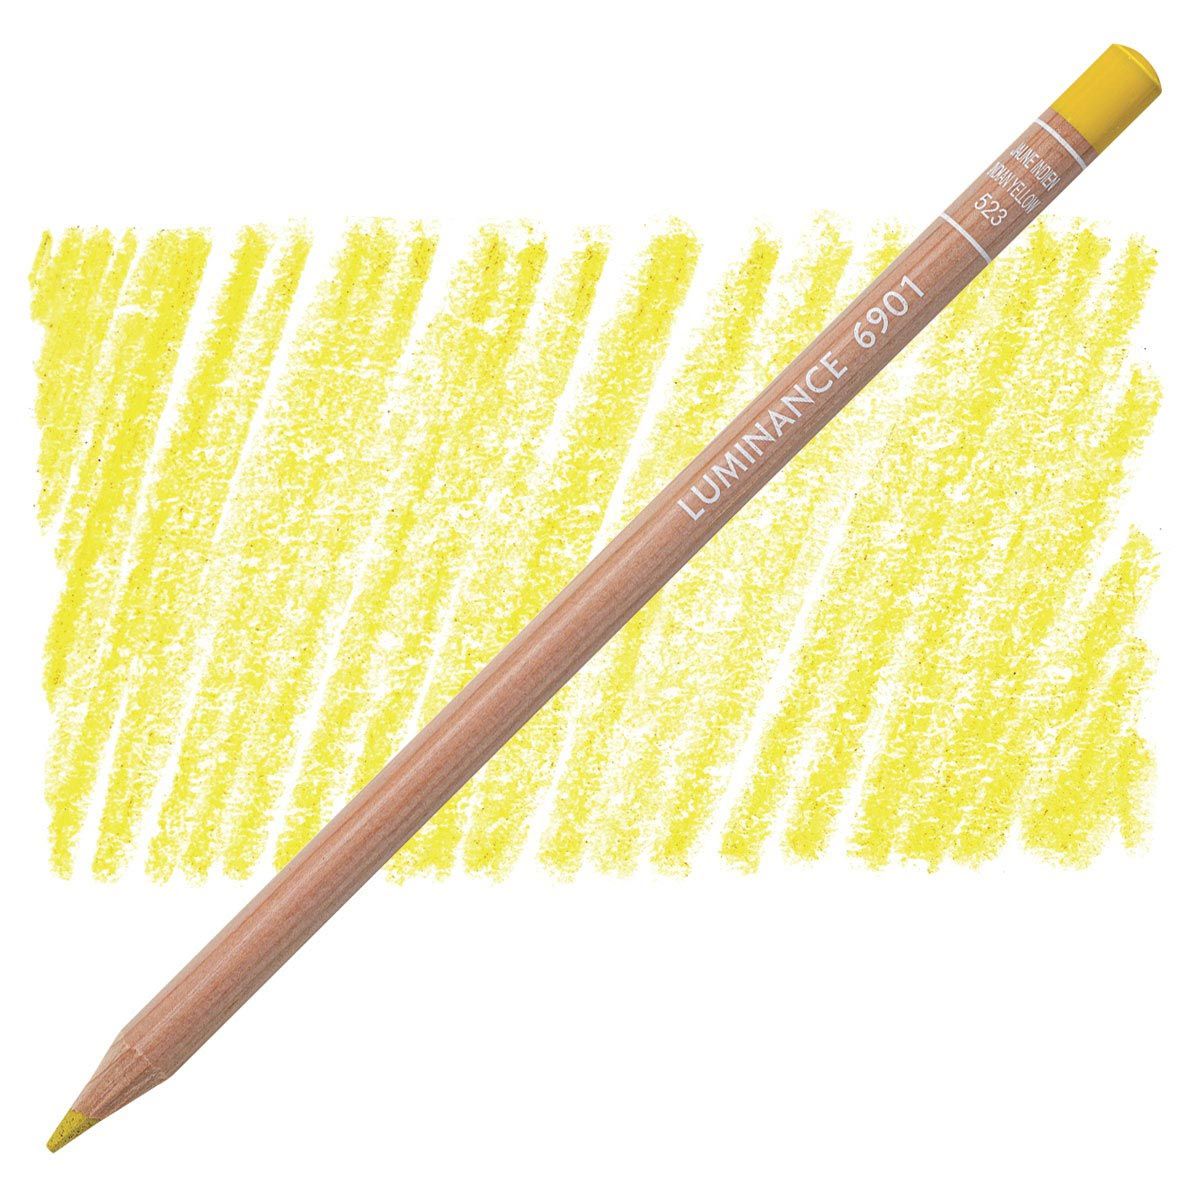 Caran d'Ache Luminance 6901 Pencil - 523 Indian Yellow